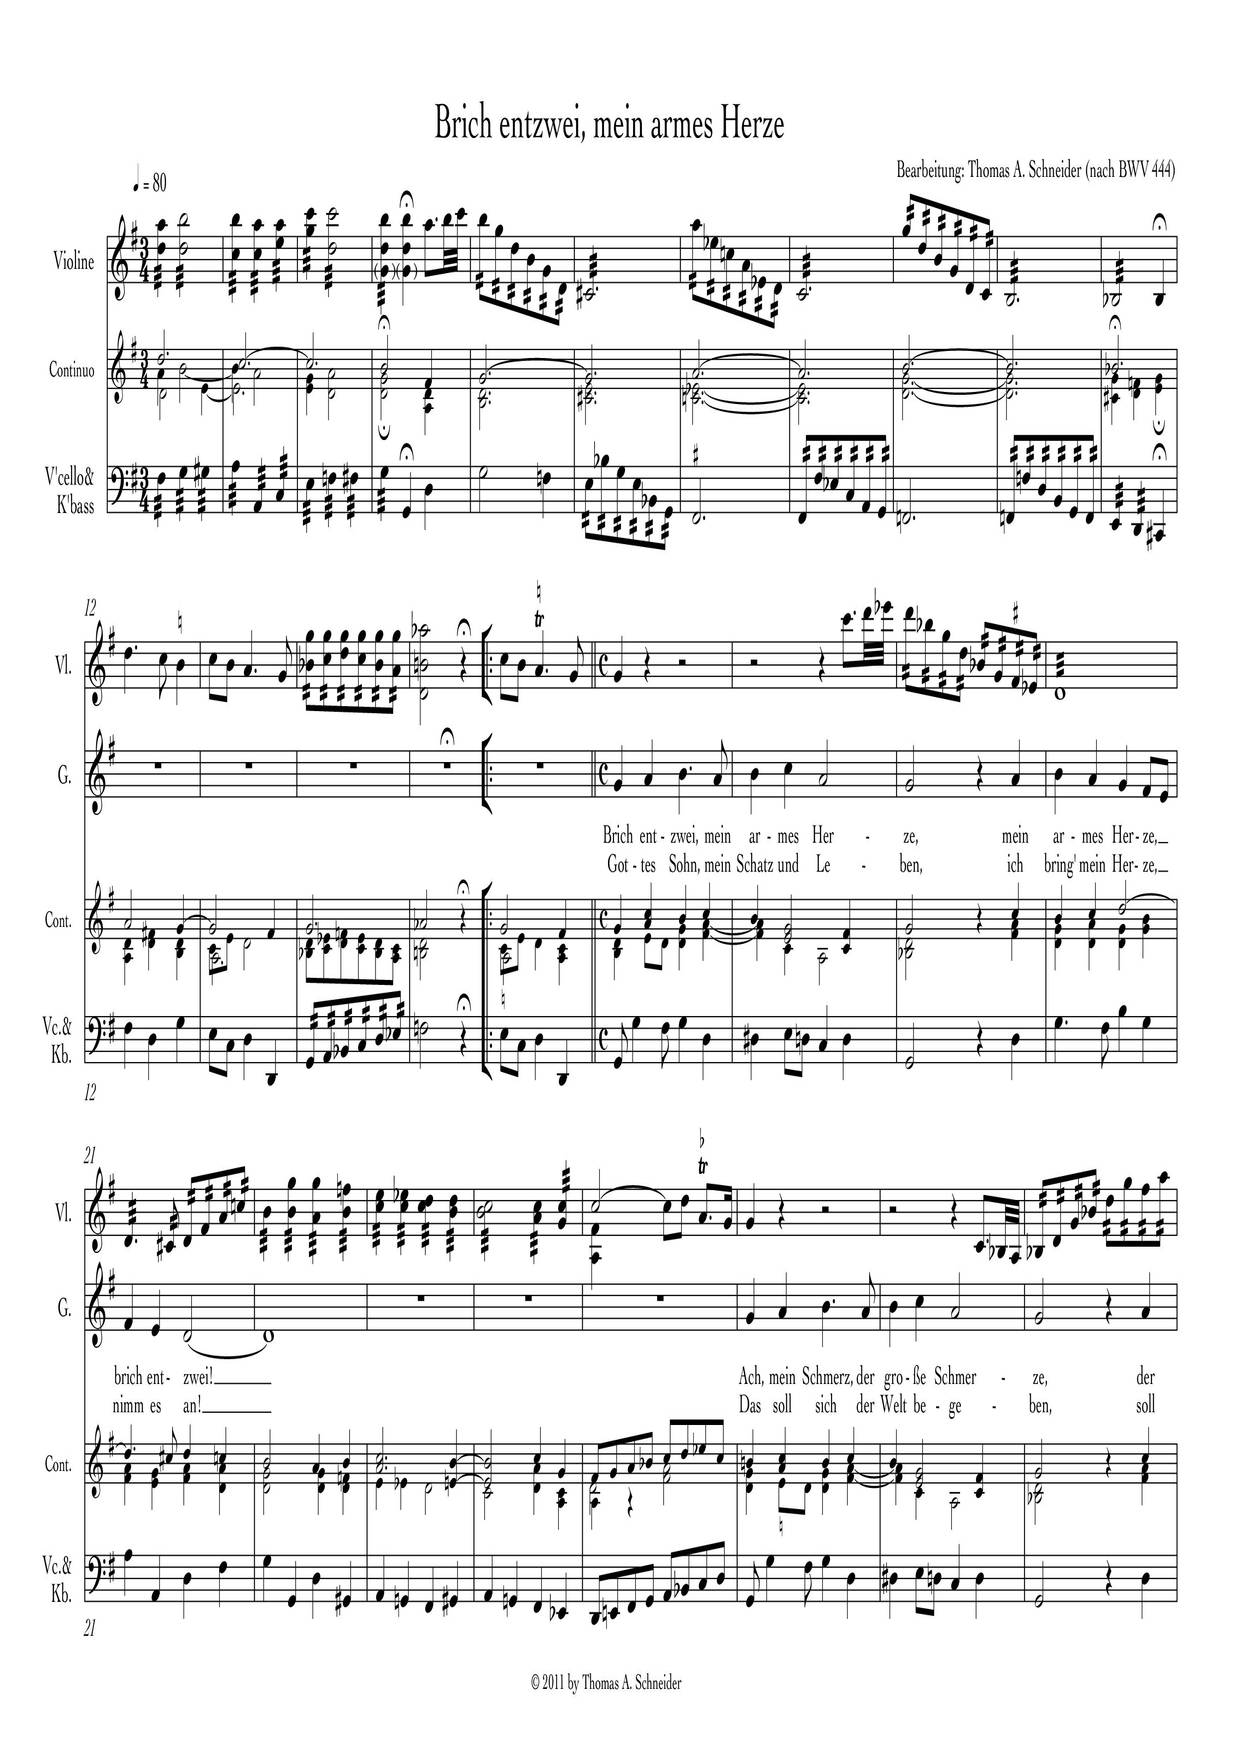 Brich Entzwei, Mein Armes Herze, BWV 444 Score